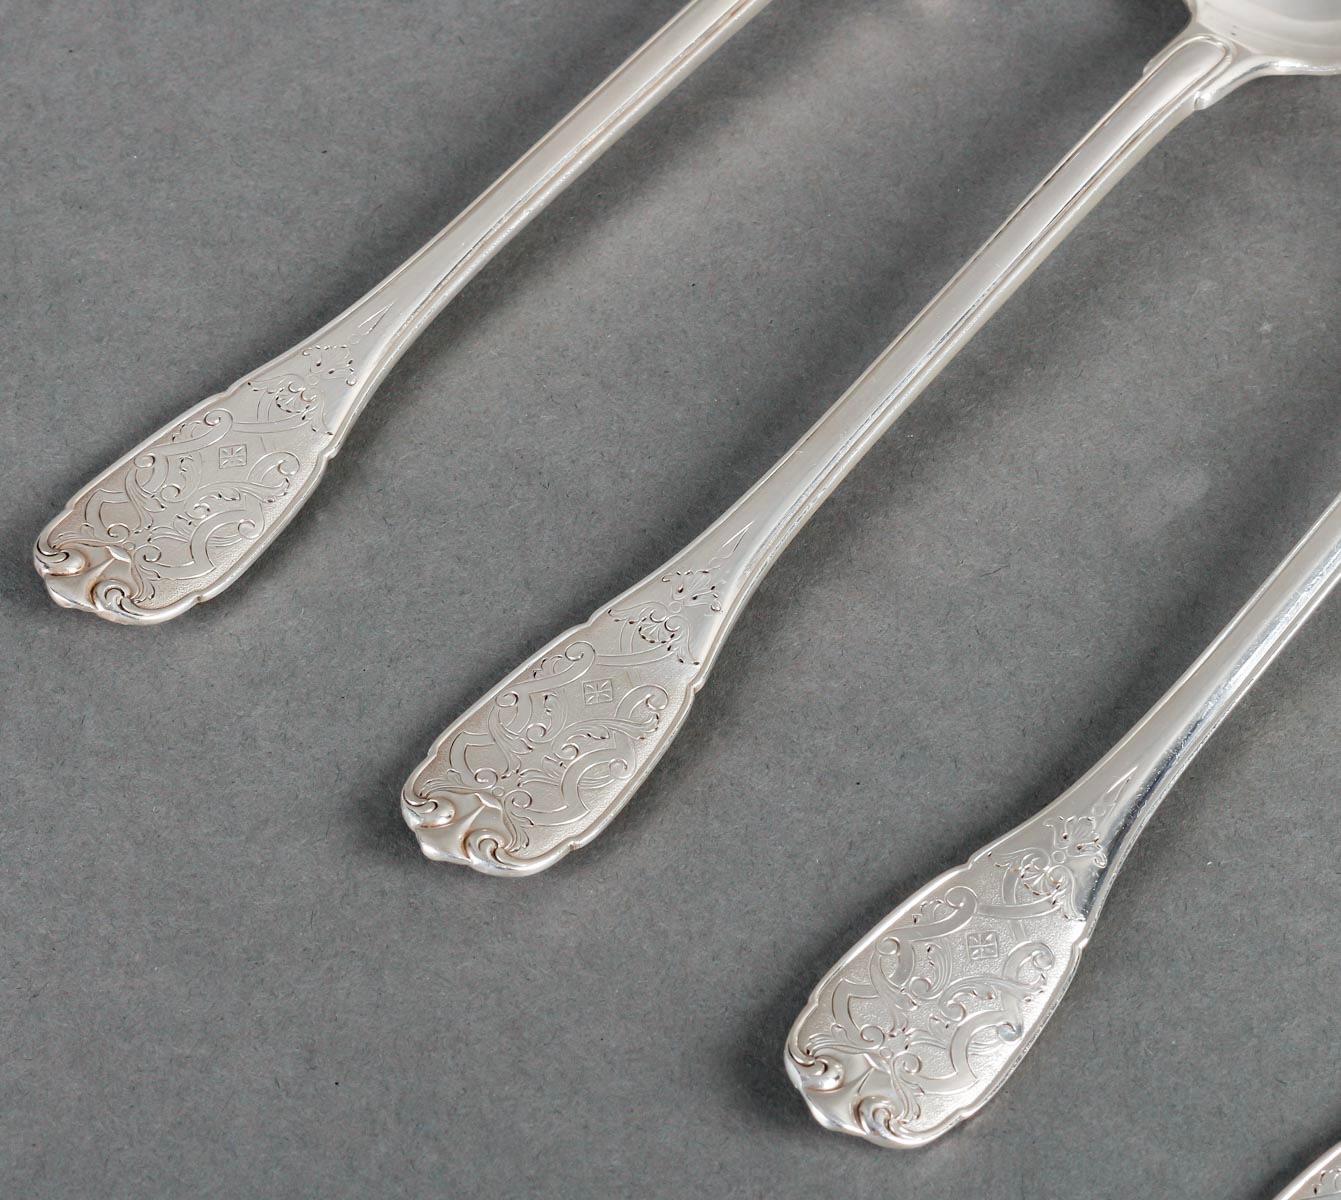 Puiforcat - Cutlery Flatware Set Elysee Sterling Silver & Vermeil - 127 Pieces 4